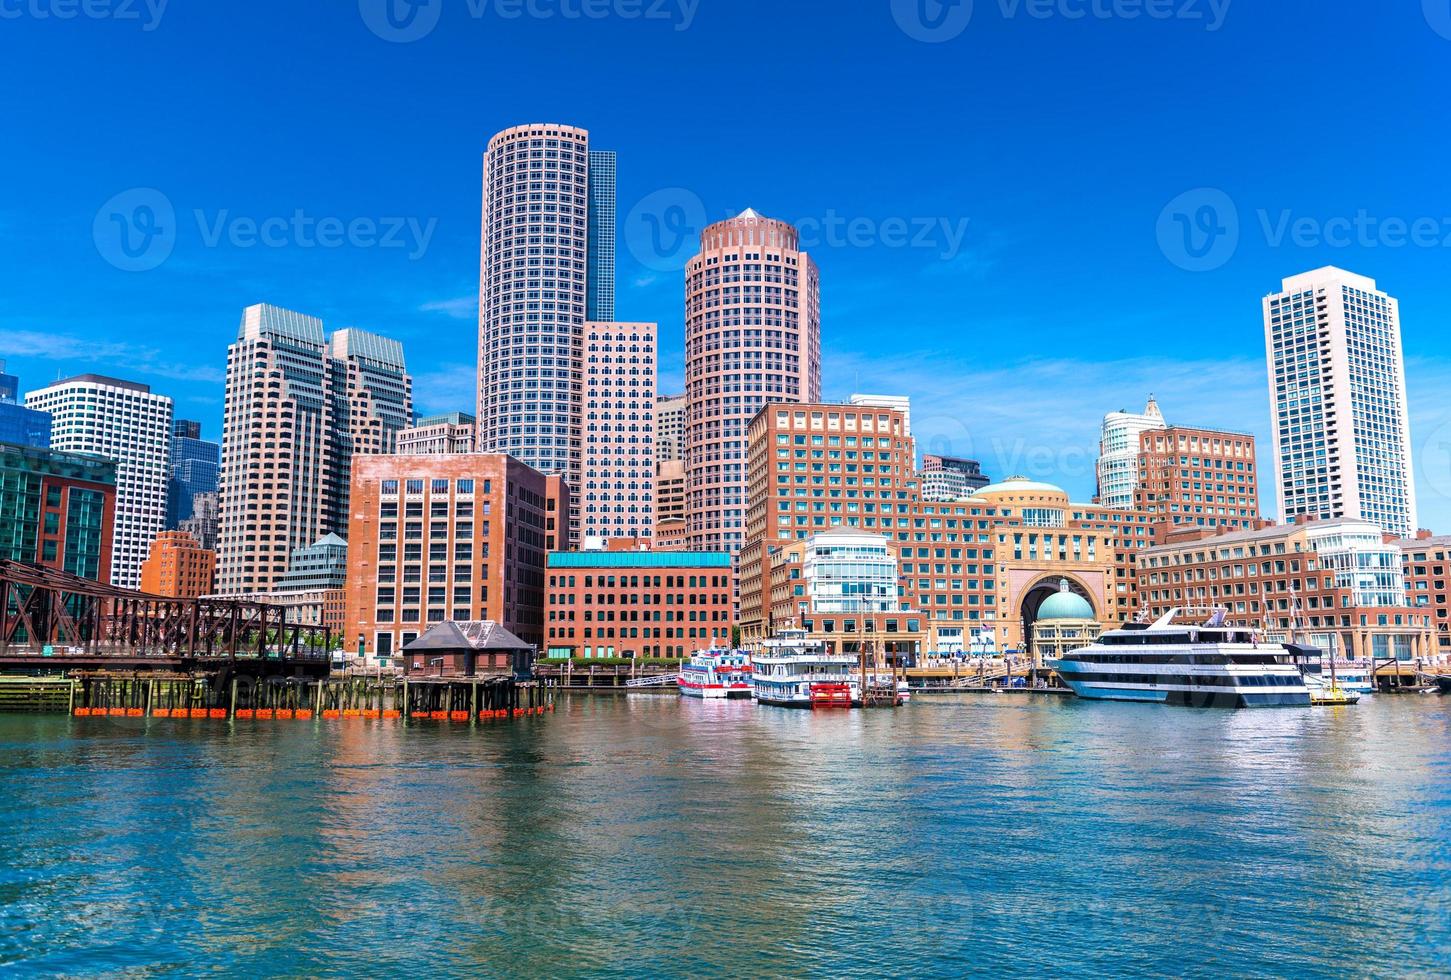 paisagem urbana de boston refletida na água, arranha-céus e prédios de escritórios no centro da cidade, vista do porto de boston, massachusetts, eua foto